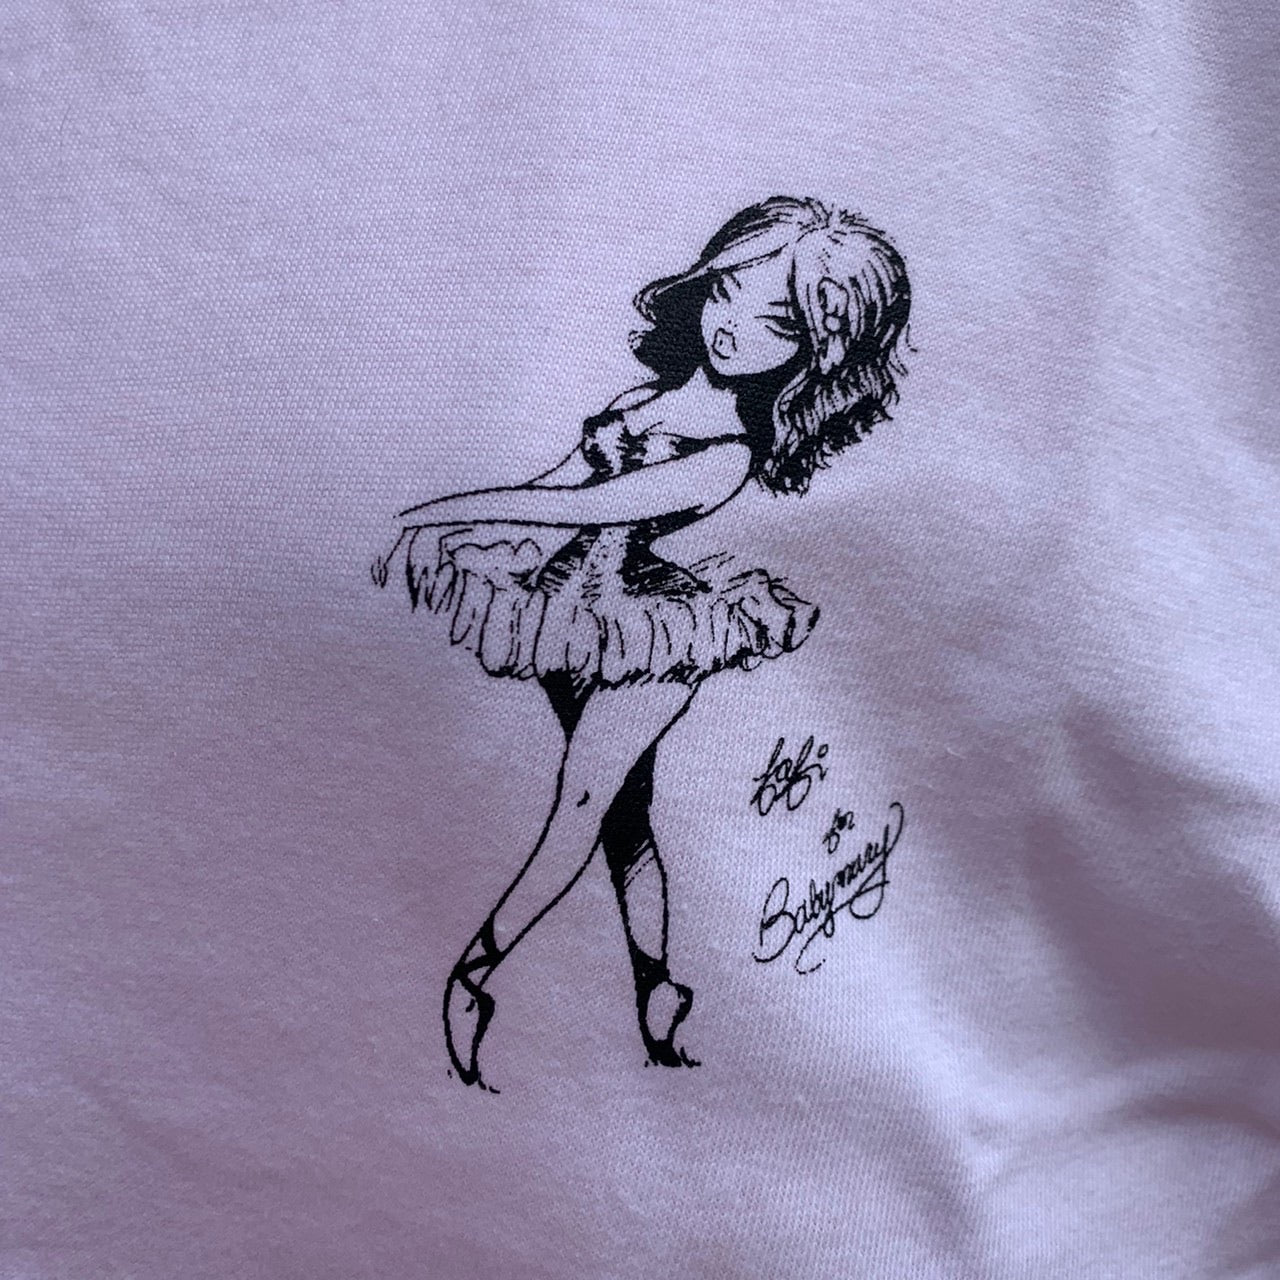 Fafi x Faline ballerina Tee shirt (White)